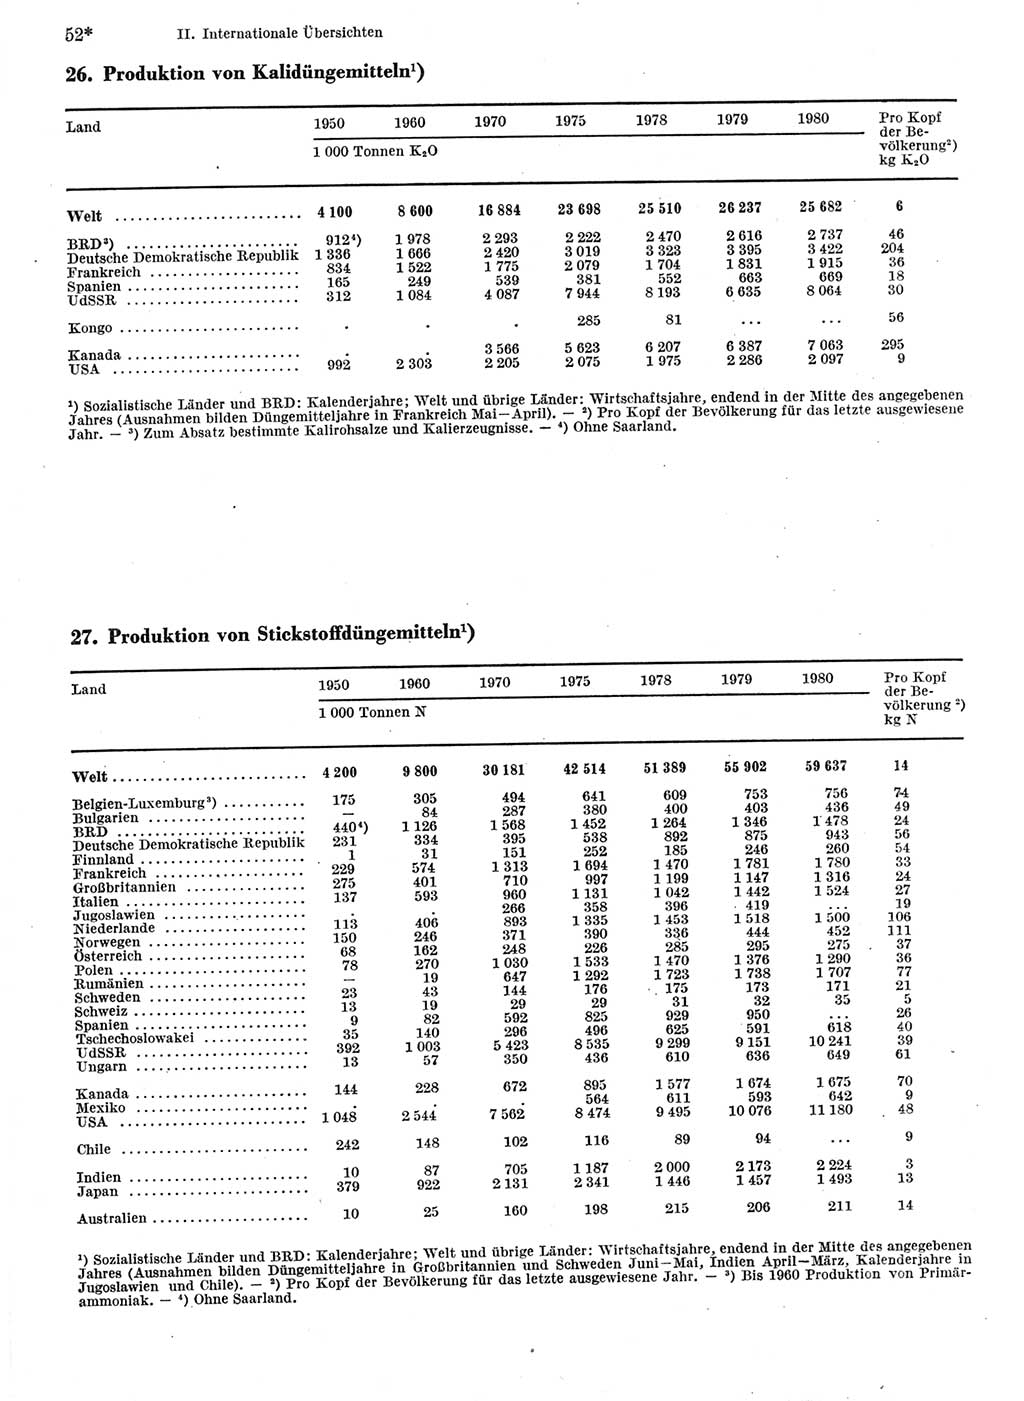 Statistisches Jahrbuch der Deutschen Demokratischen Republik (DDR) 1982, Seite 52 (Stat. Jb. DDR 1982, S. 52)